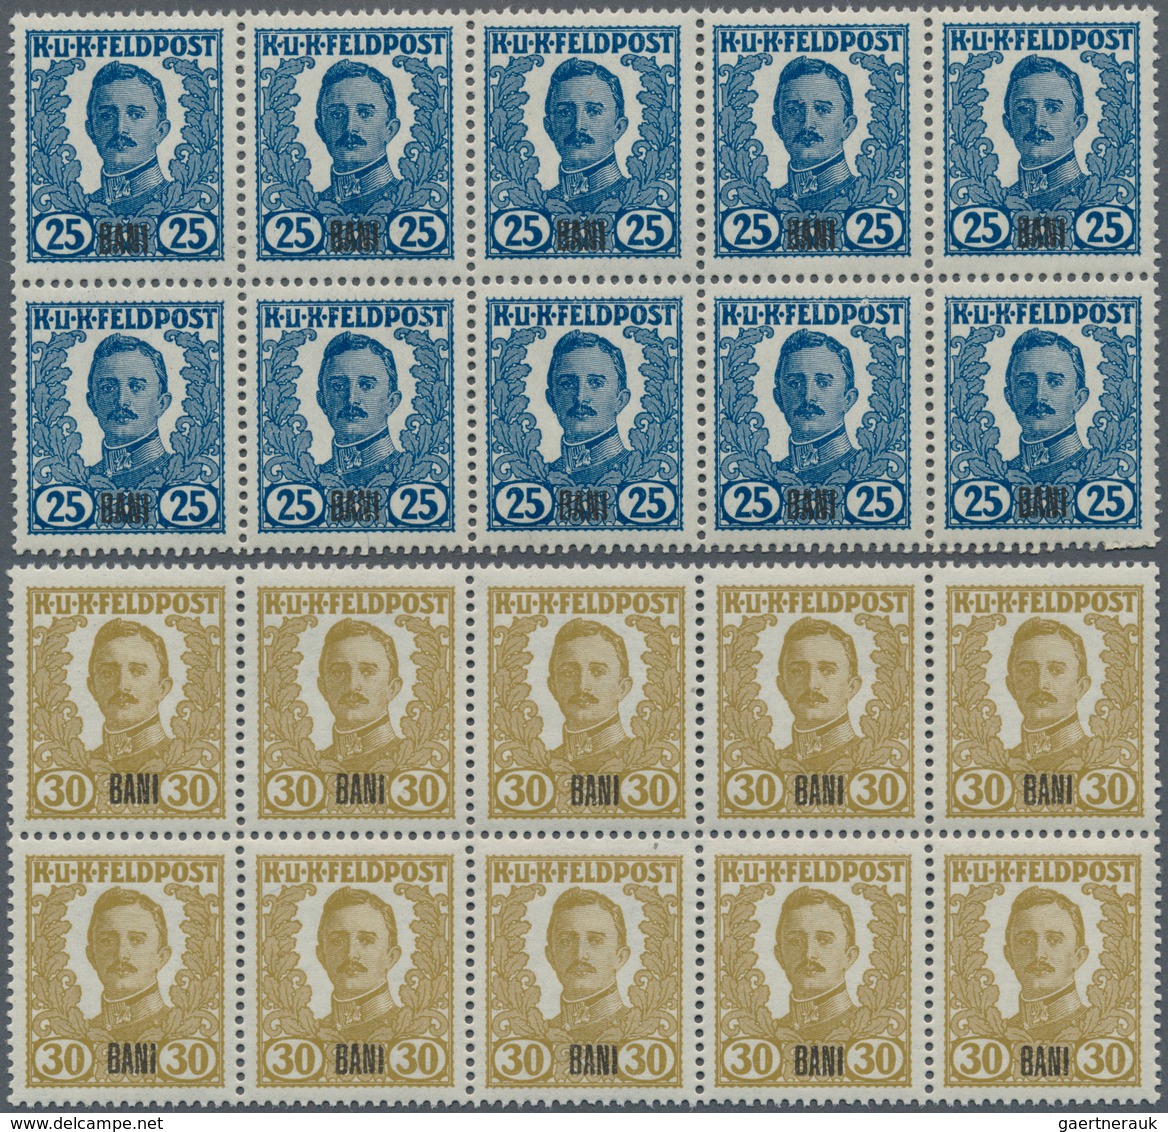 01925 Österreichisch-Ungarische Feldpost - Rumänien: 1918 Unverausgabte Serie 'Kaiser Karl I.' mit Aufdruc